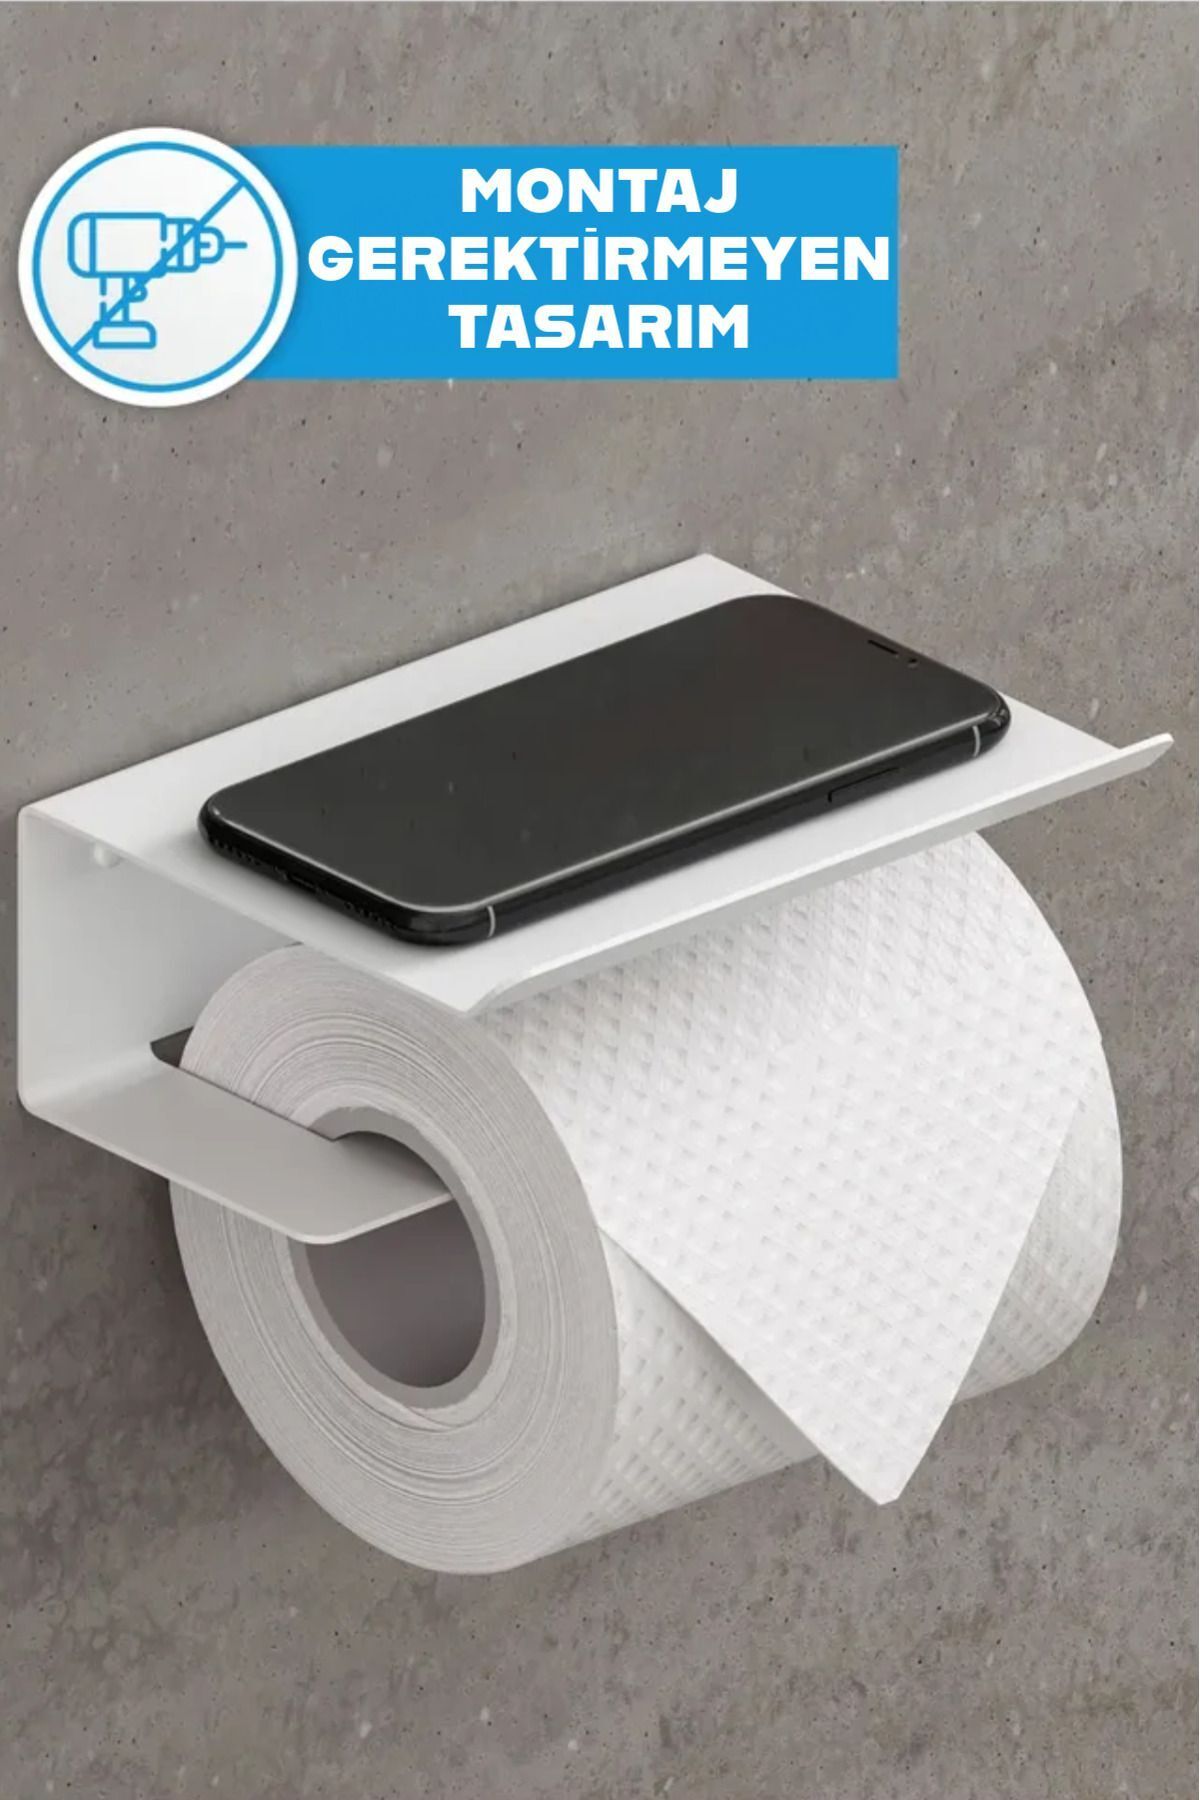 3art Metal Yapışkanlı Tuvalet Kağıtlığı - Dekoratif Banyo Askısı Peçetelik